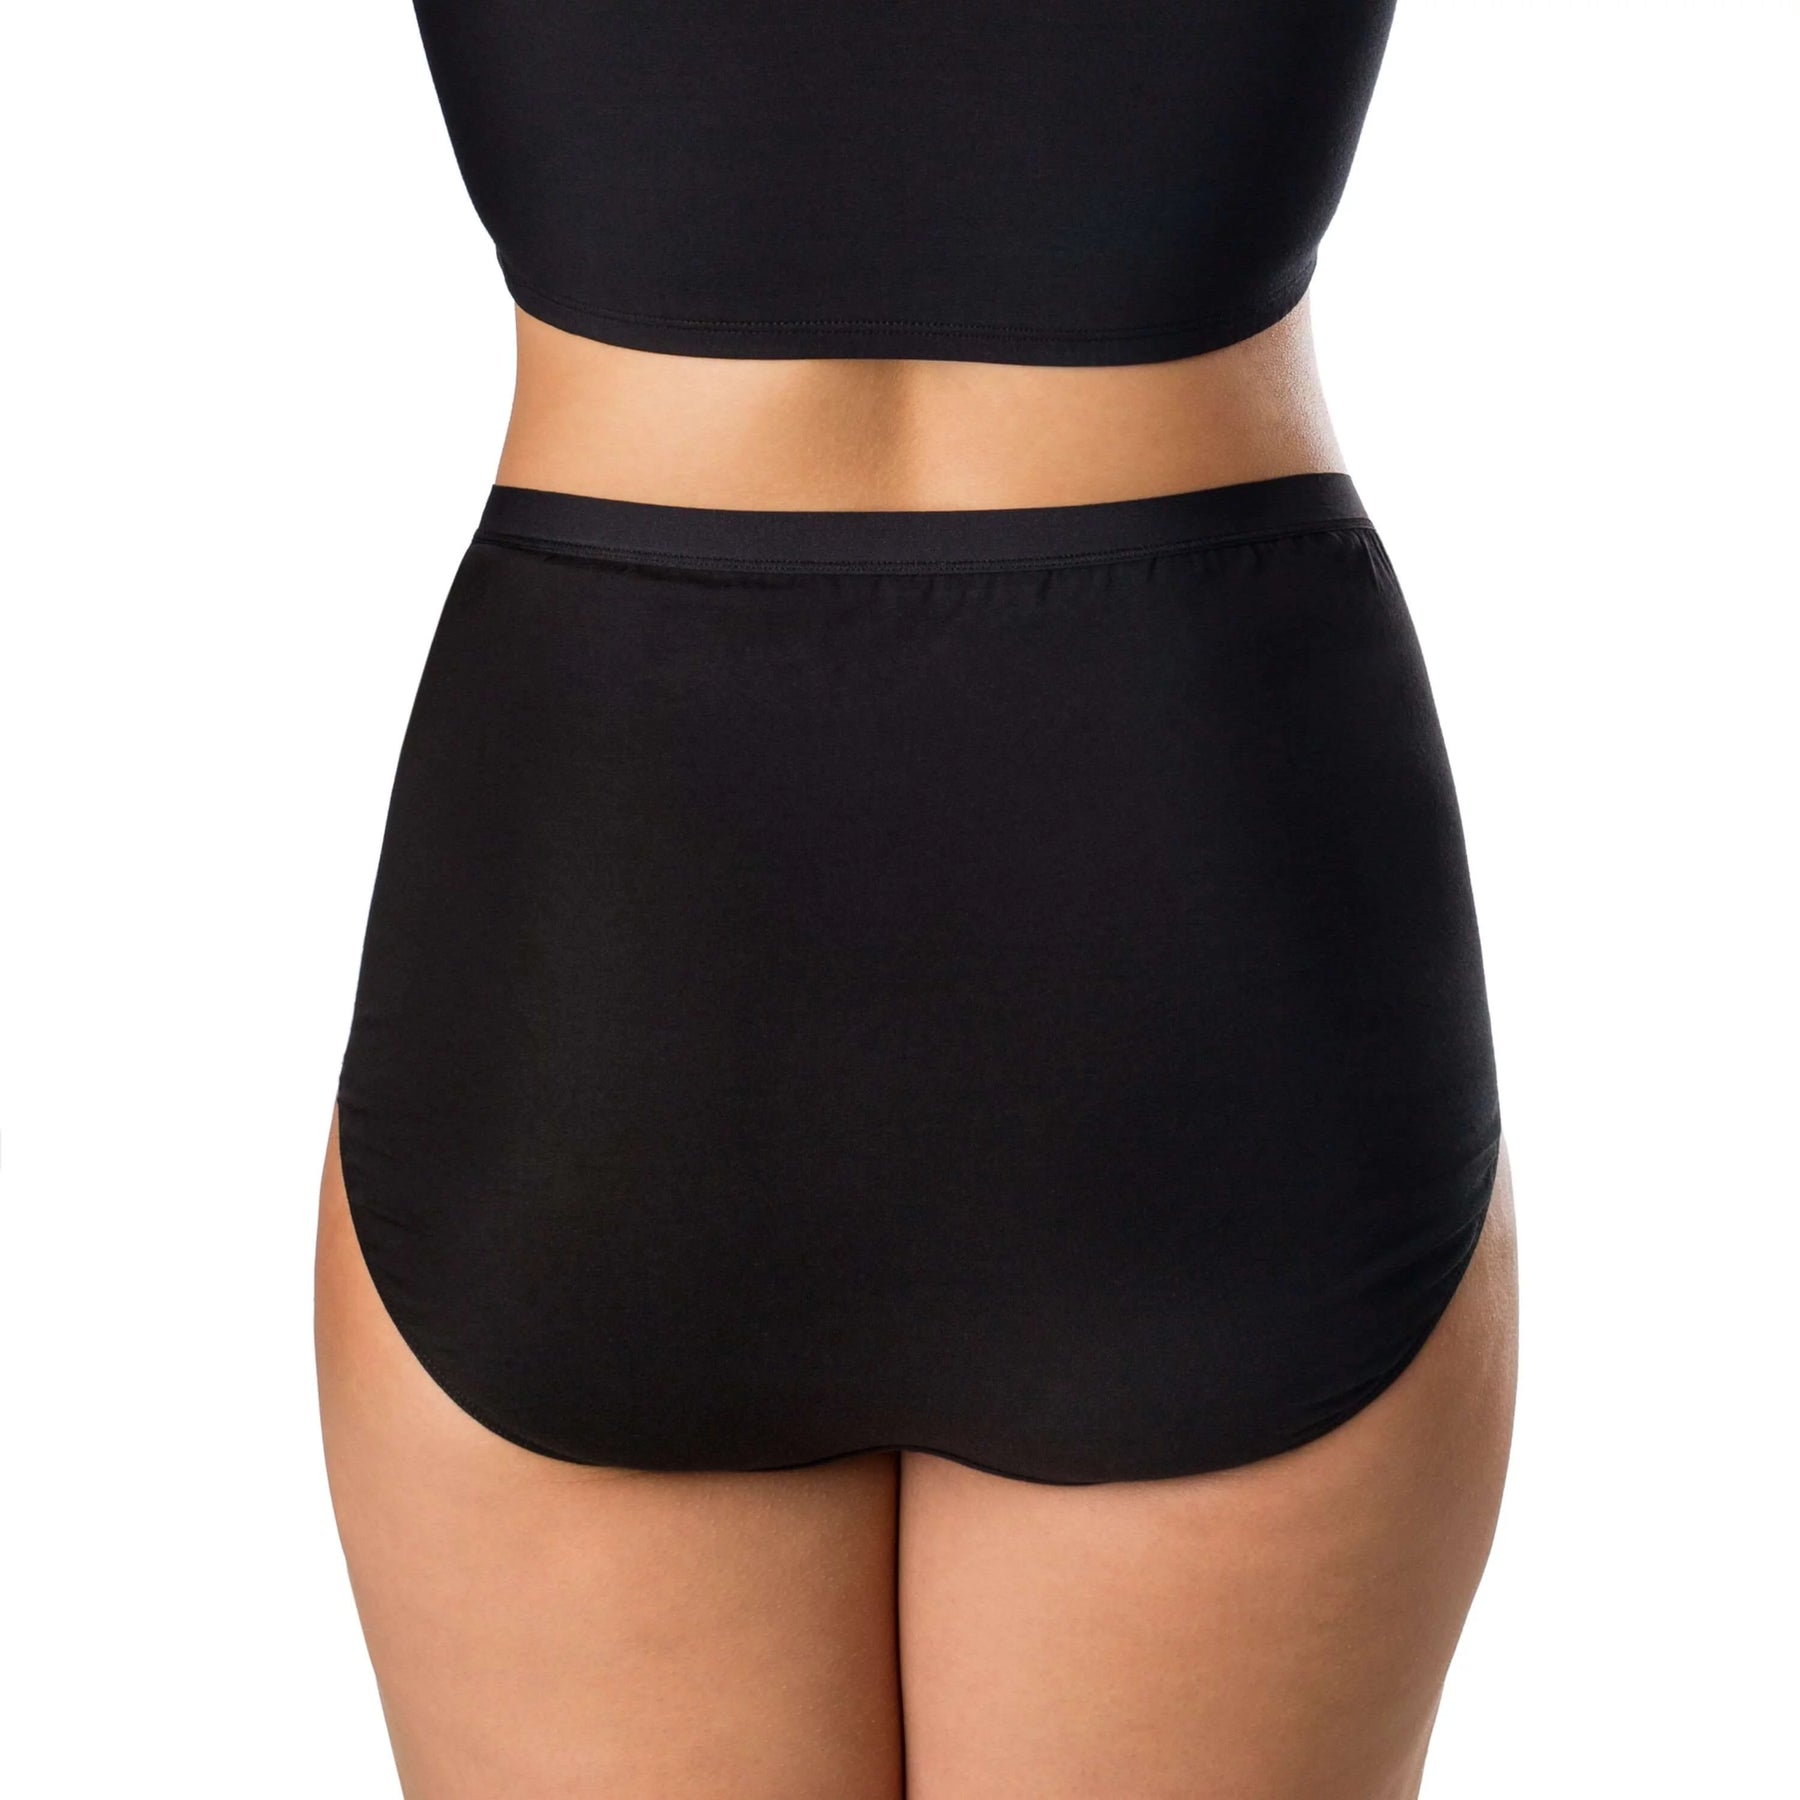 Cozeyat Black Color Briefs for Women Girls Underpants Size S